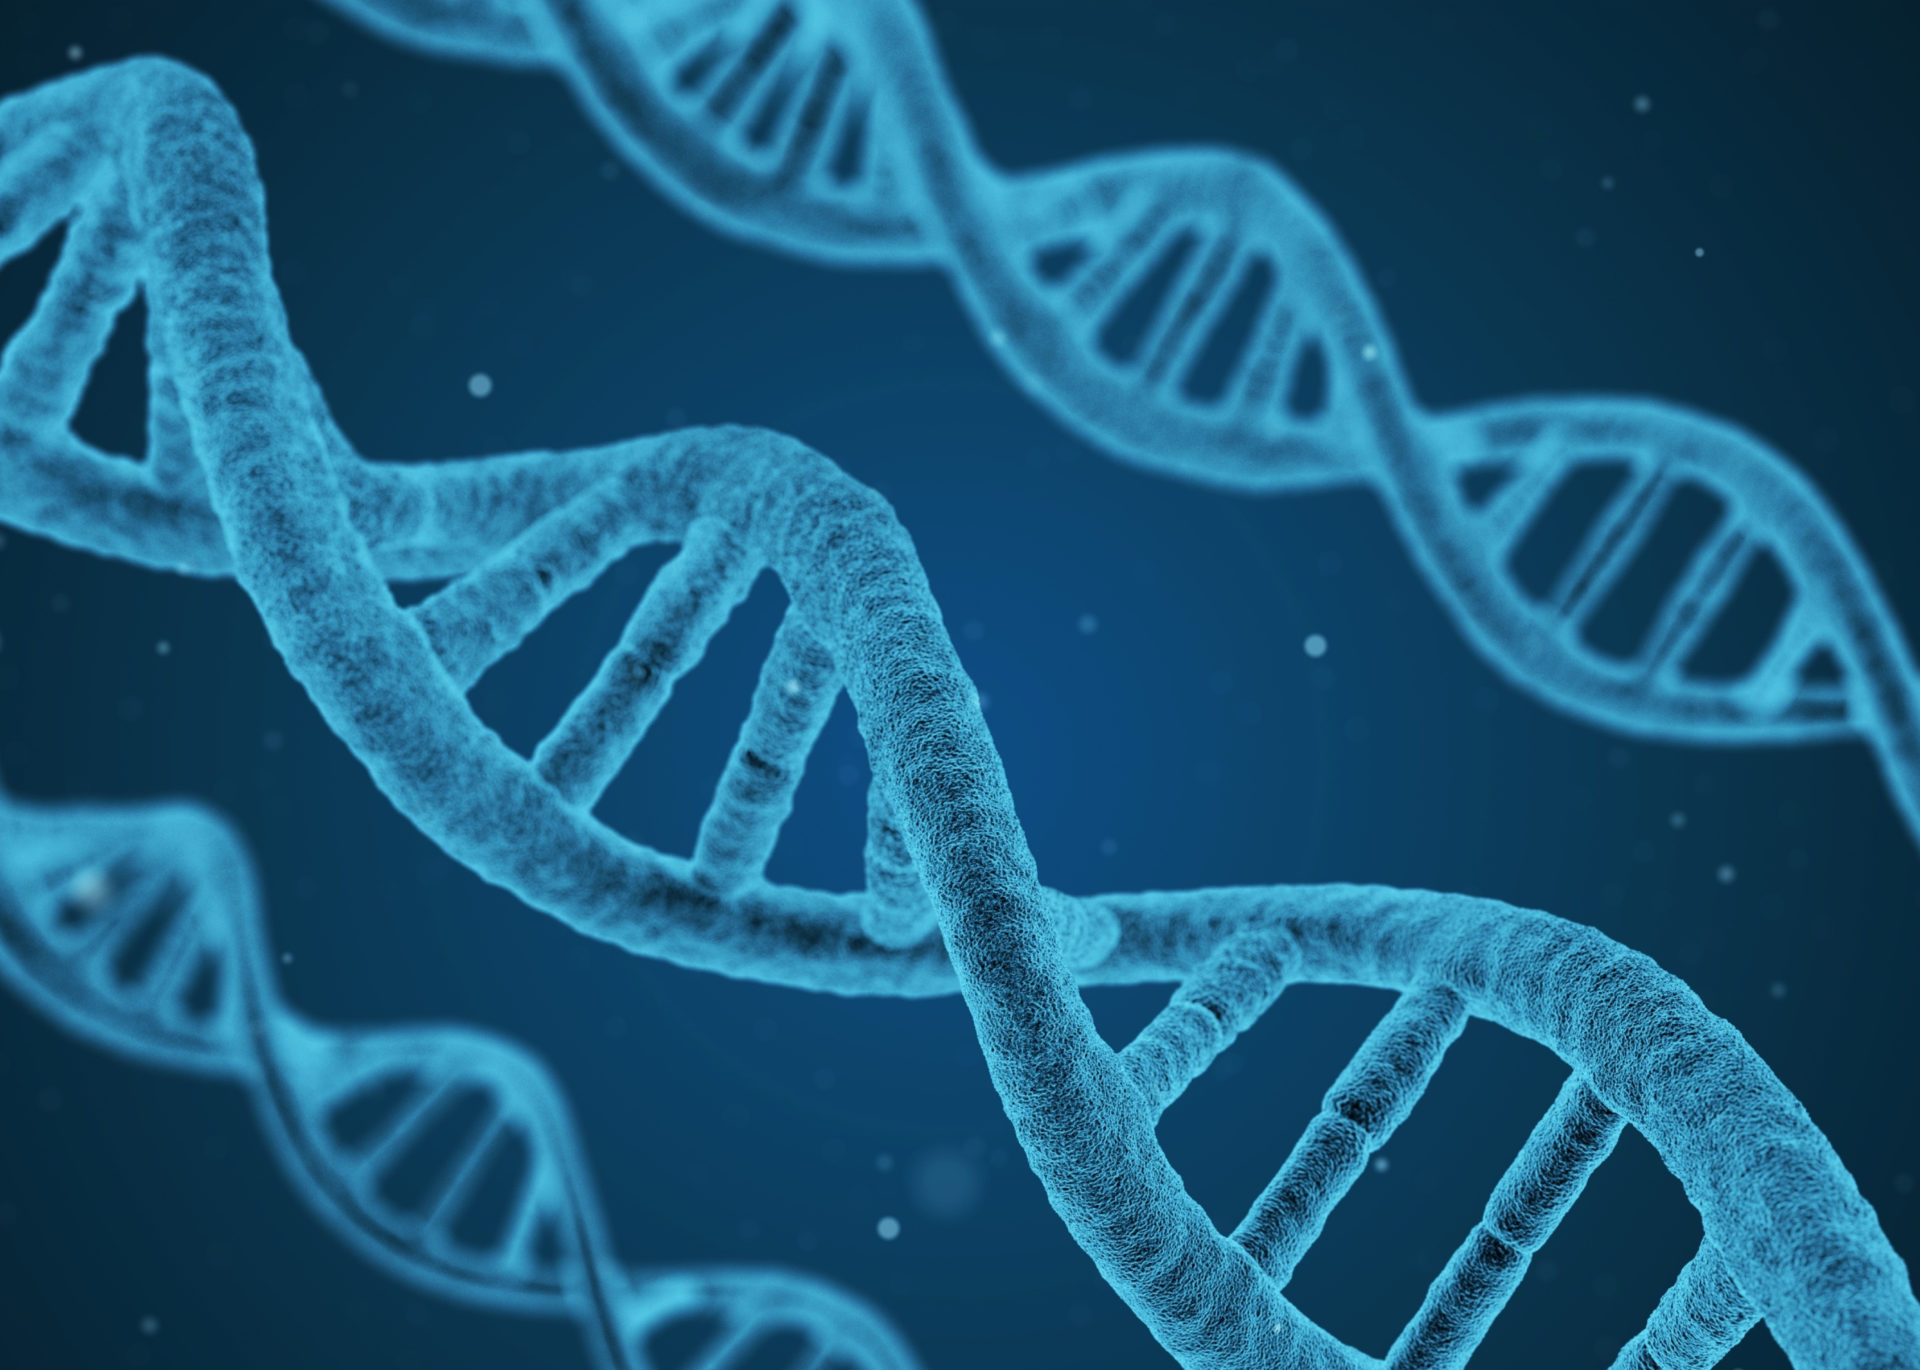 De dubbele helix: de wereldberoemde vorm van DNA